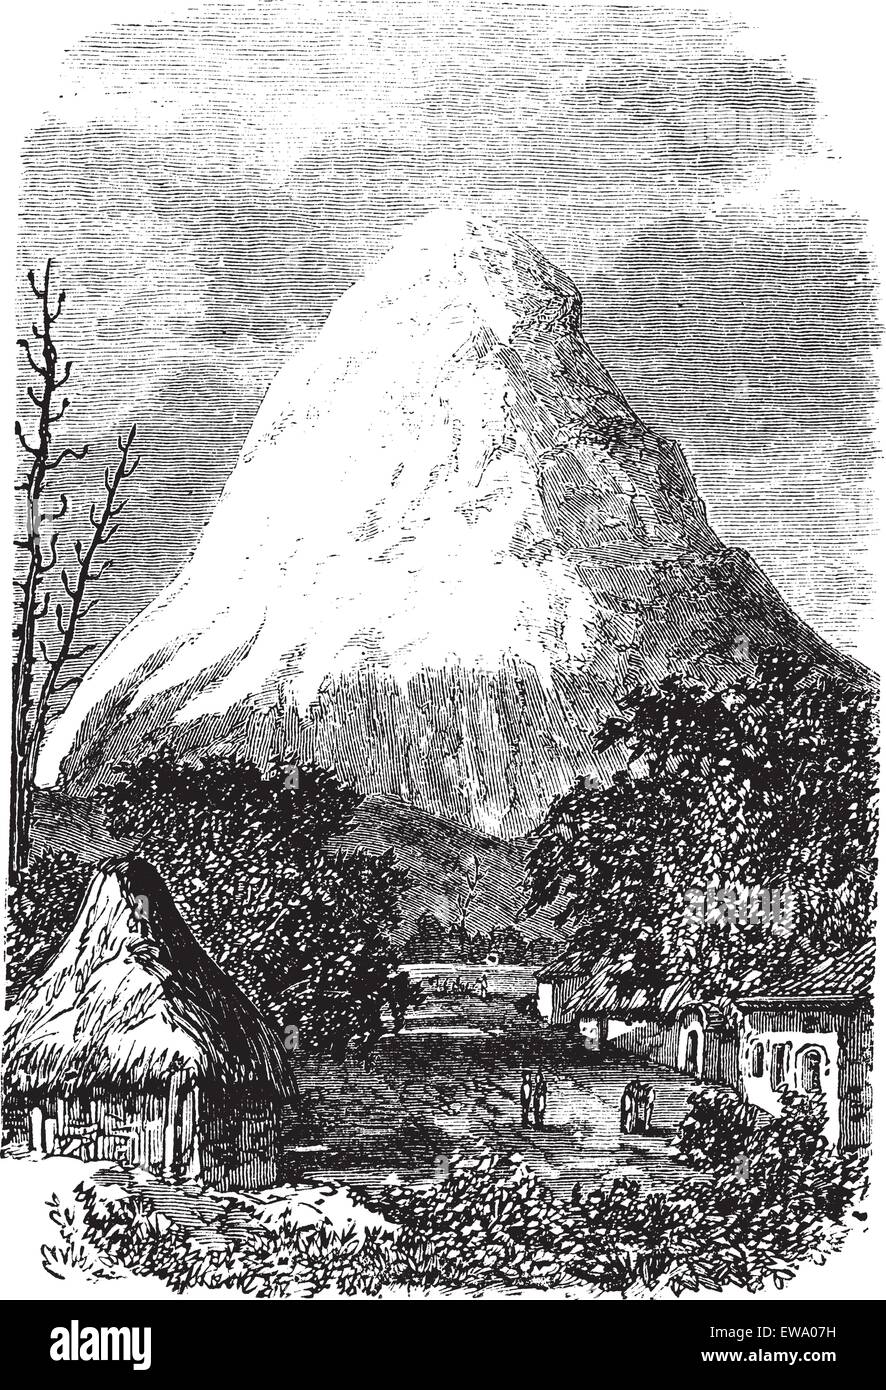 Volcan Chimborazo en Équateur, au cours des années 1890, vintage la gravure. Vieille illustration gravée du volcan Chimborazo en Ecuad Illustration de Vecteur